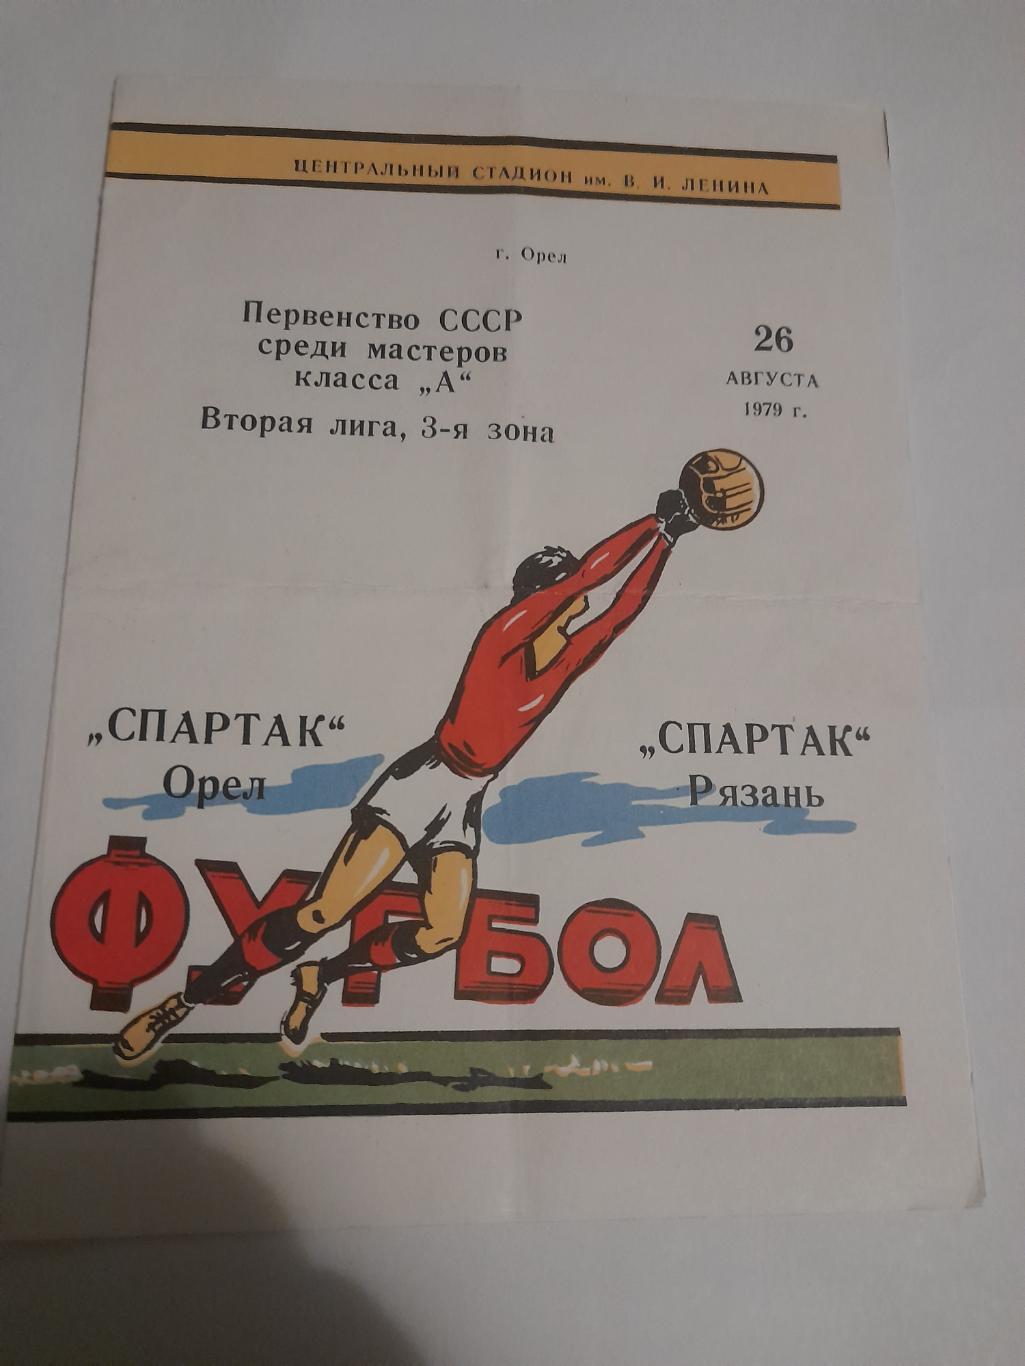 Спартак Орел - Спартак Рязань 1979